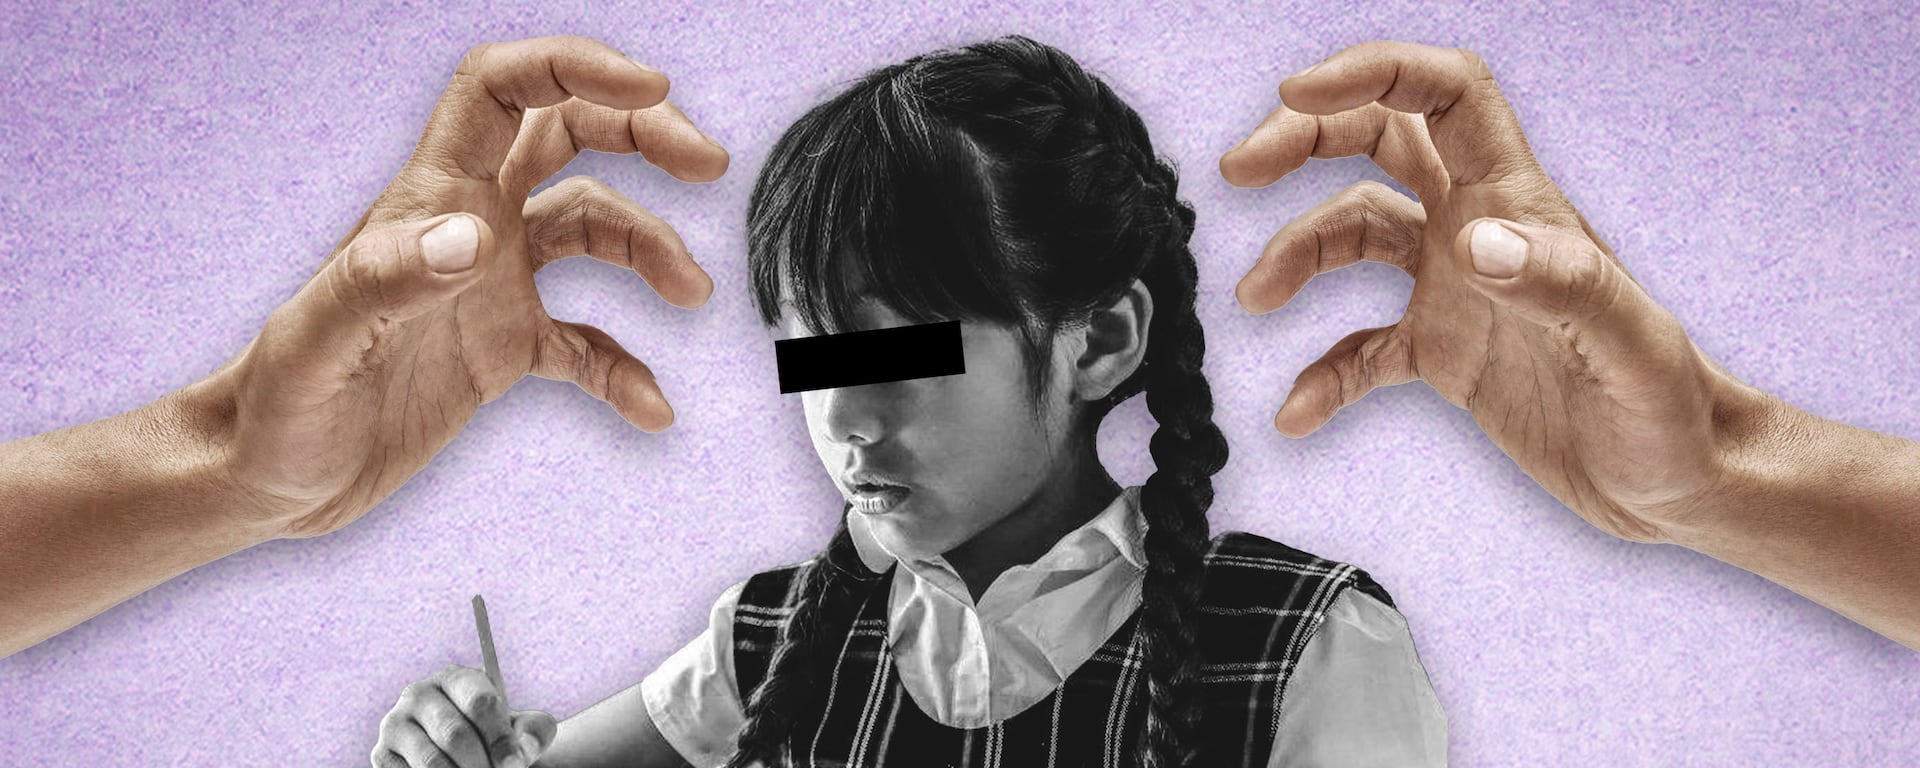 Cada seis días un profesor es  denunciado por violación sexual ante la policía